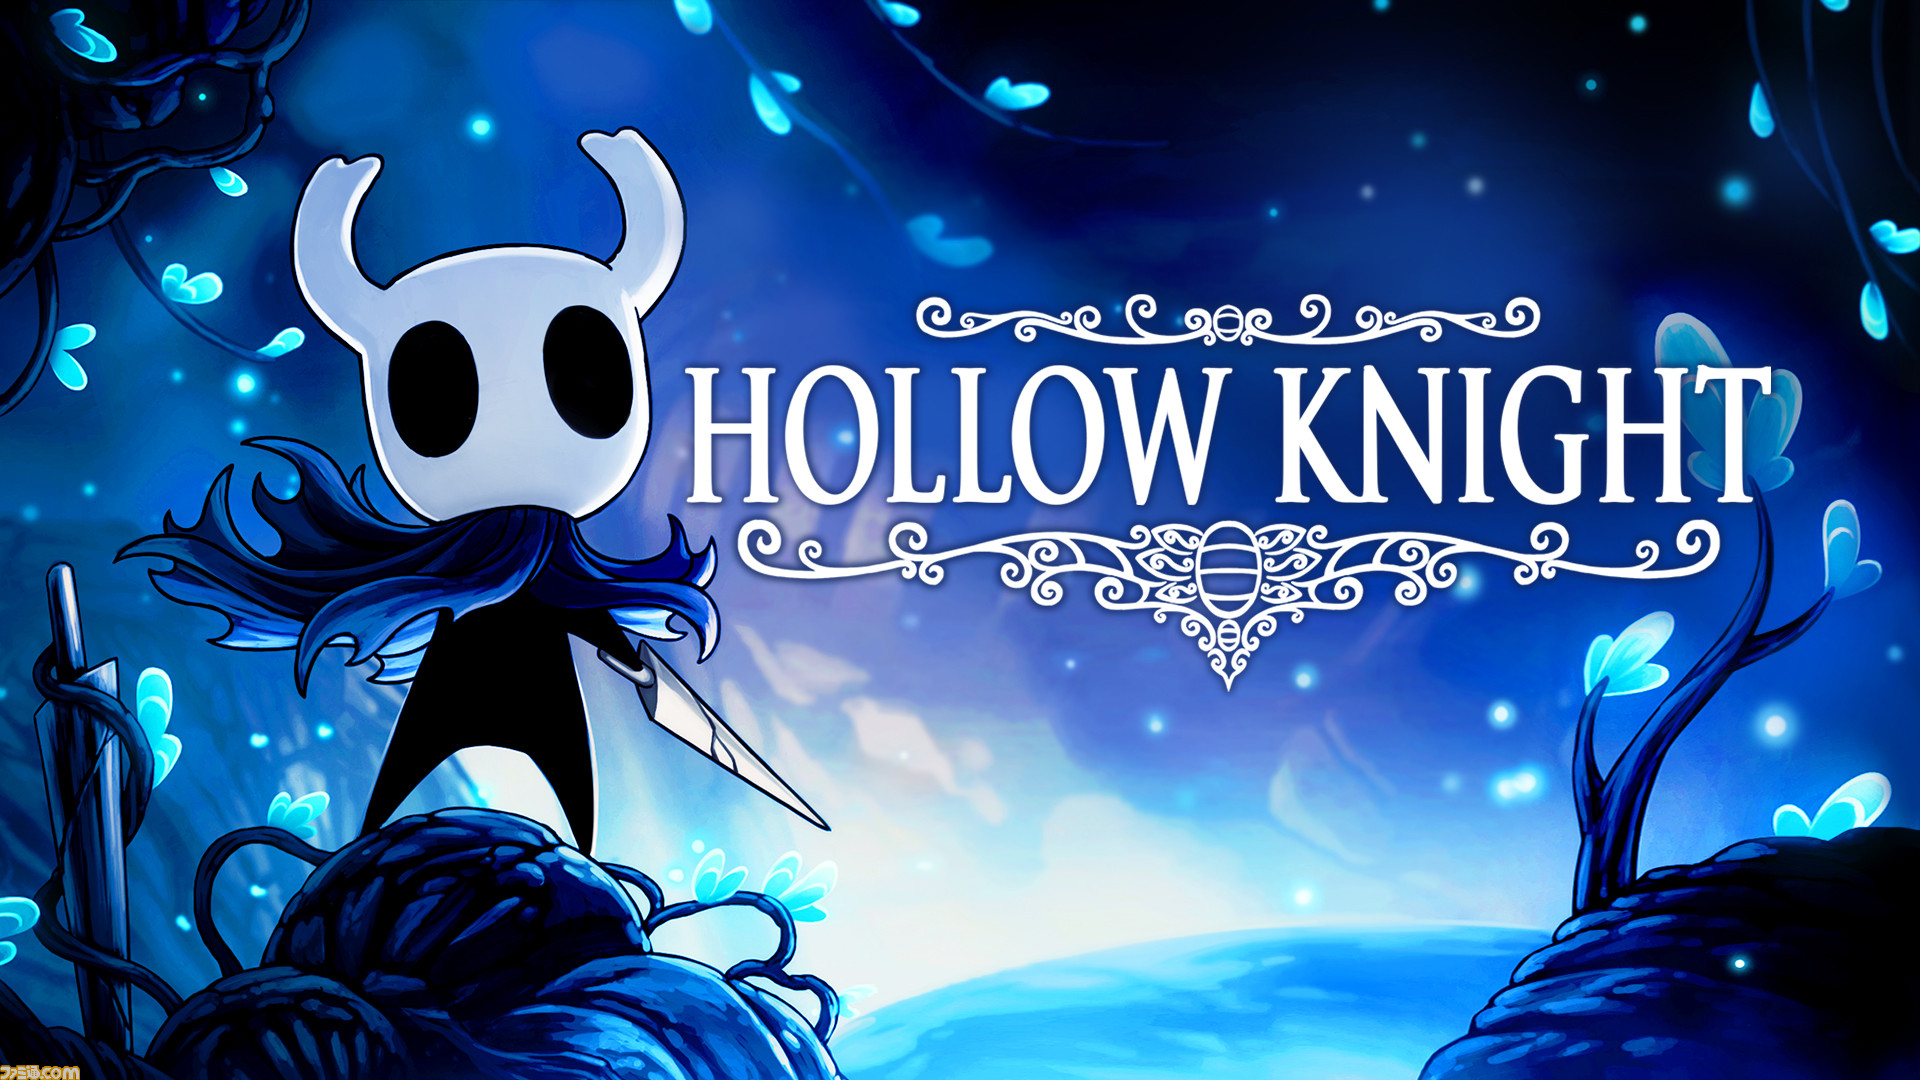 Hollow Knight（ホロウナイト）とは【ネタバレ解説・考察まとめ】